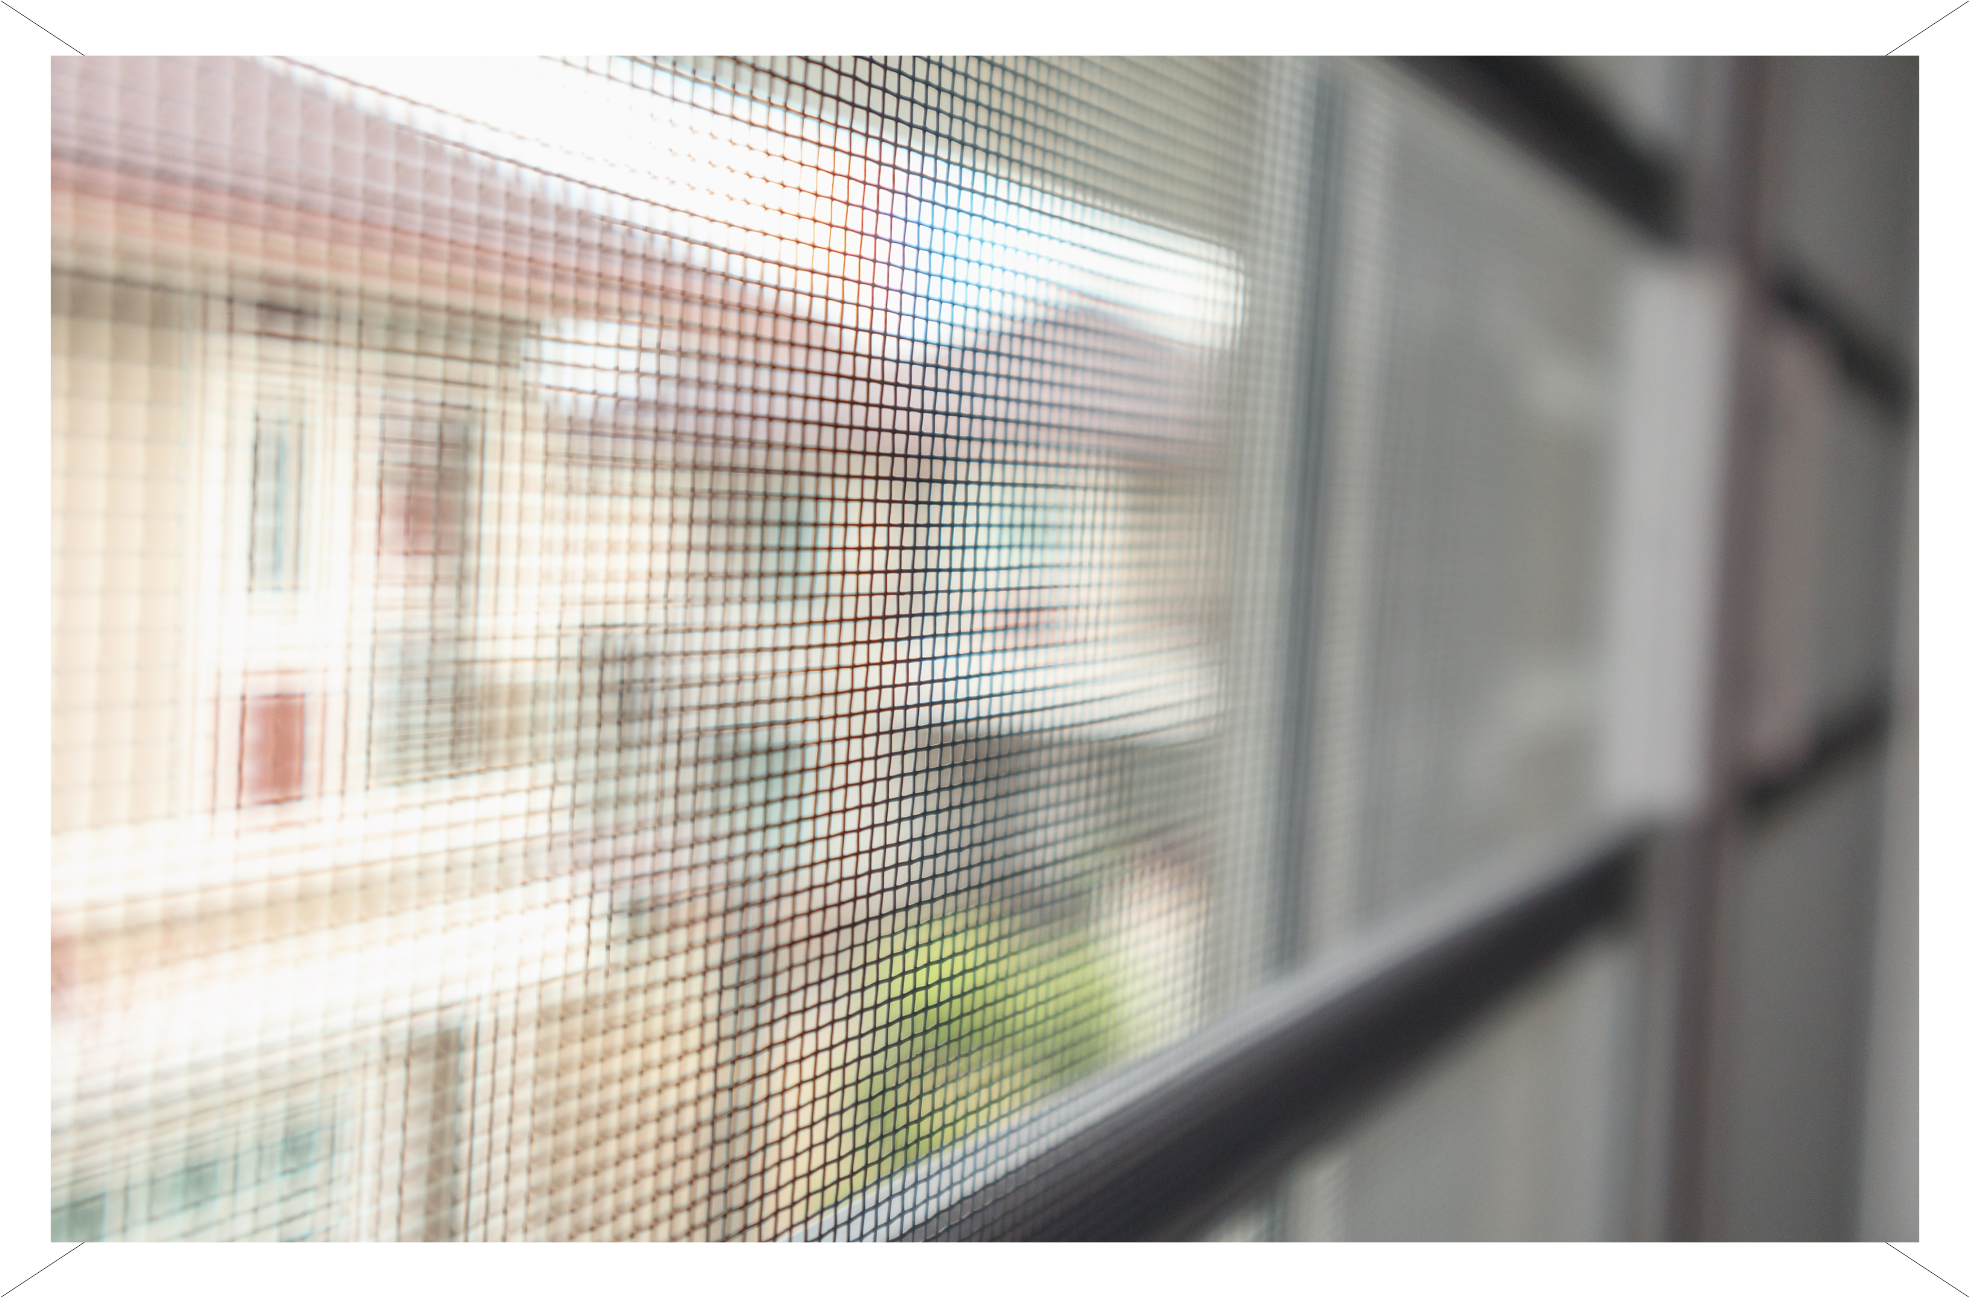 <p>A tela de proteção para janelas é um acessório útil para garantir segurança na casa.</p>

<p> </p>

<p>A <strong>D'Julie Persianas</strong> disponibiliza telas para proteção de diferentes tamanhos, espessuras de fio e cores. </p>
